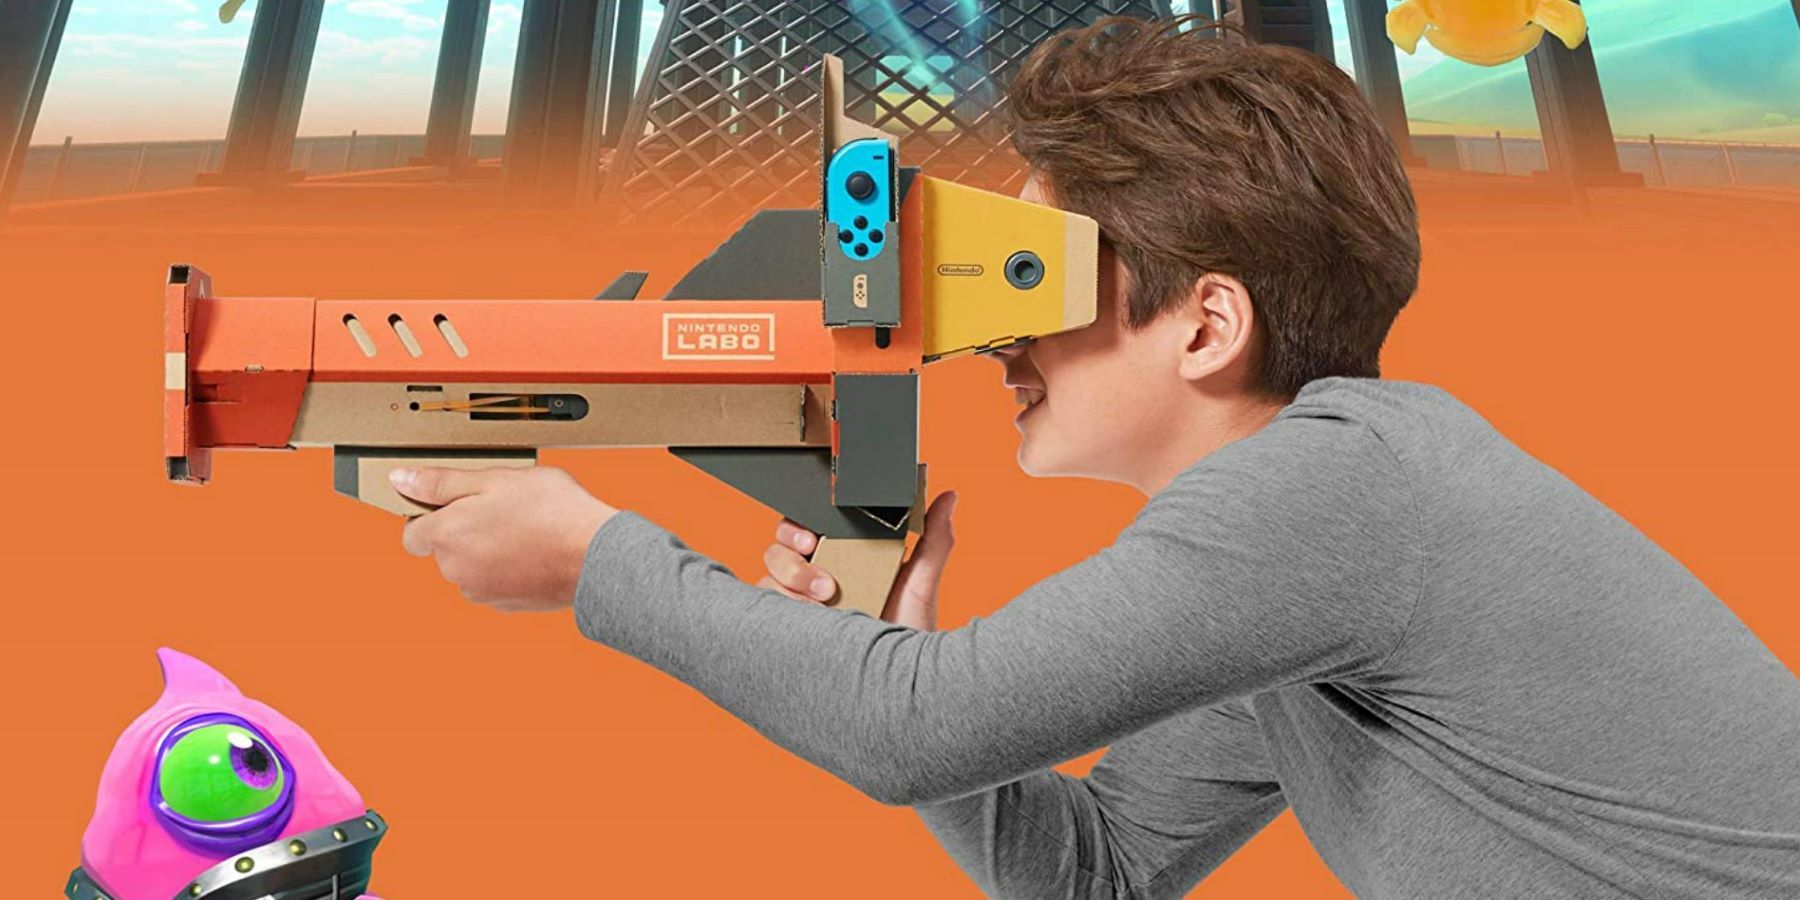 Promo image of the Nintendo Labo VR kit